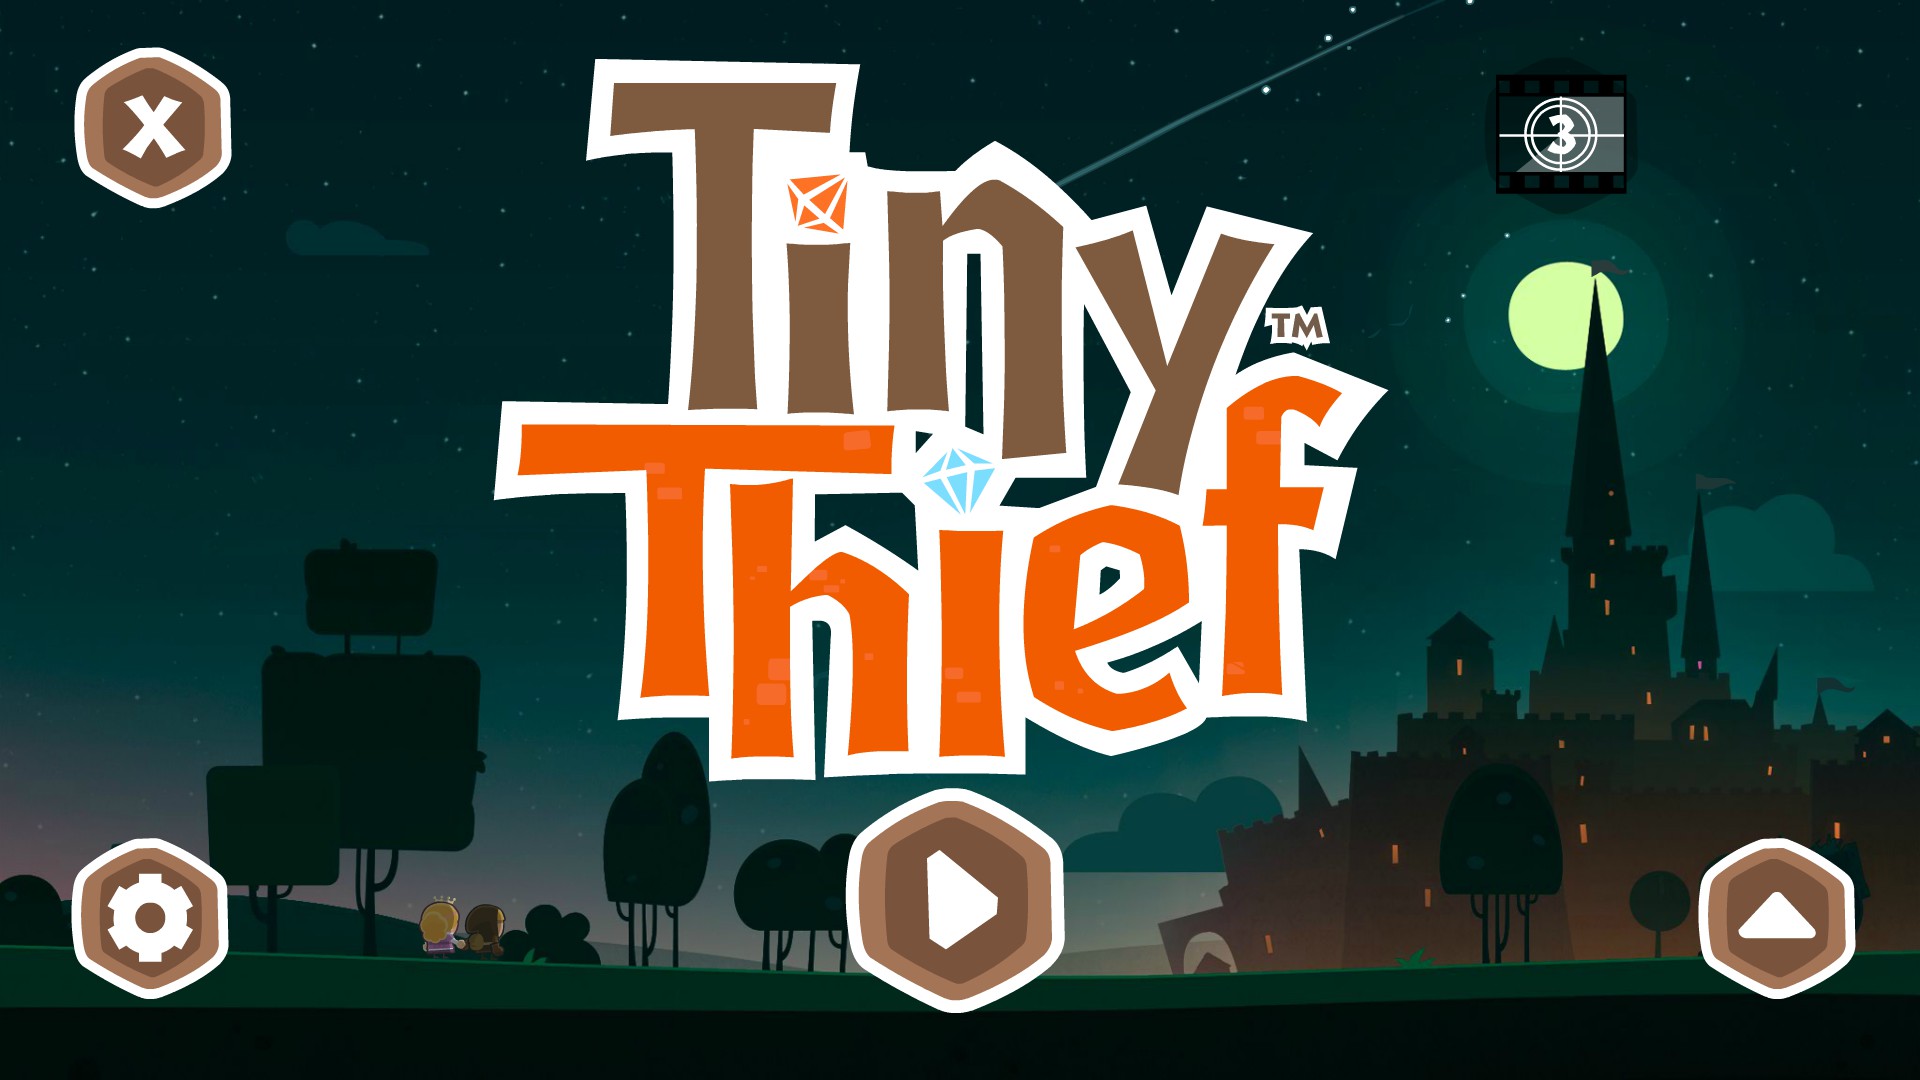 tiny thief full unlocked apk